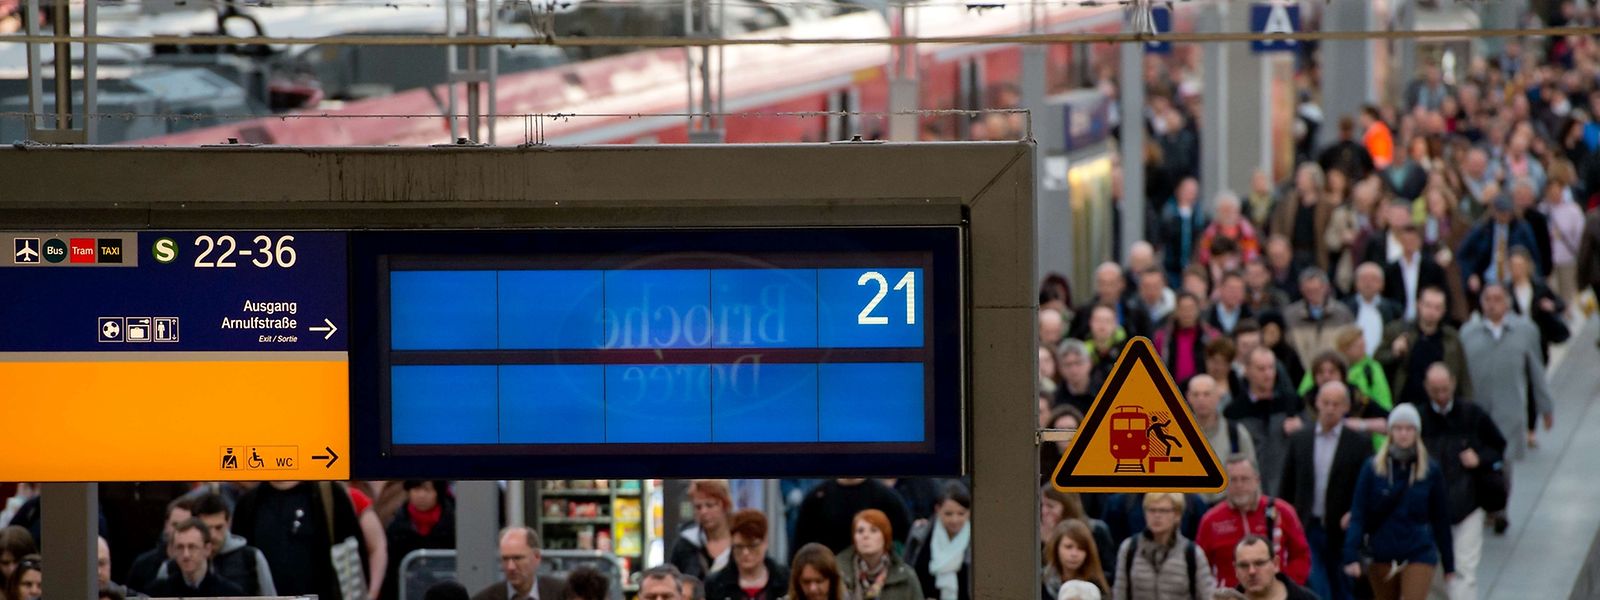 Ausfälle sind vorprogramiert: Wenn die Gewerkschaft GDL ihre Drohung wahr macht, geht an deutschen Bahnhöfen ab Dienstag nicht mehr viel.